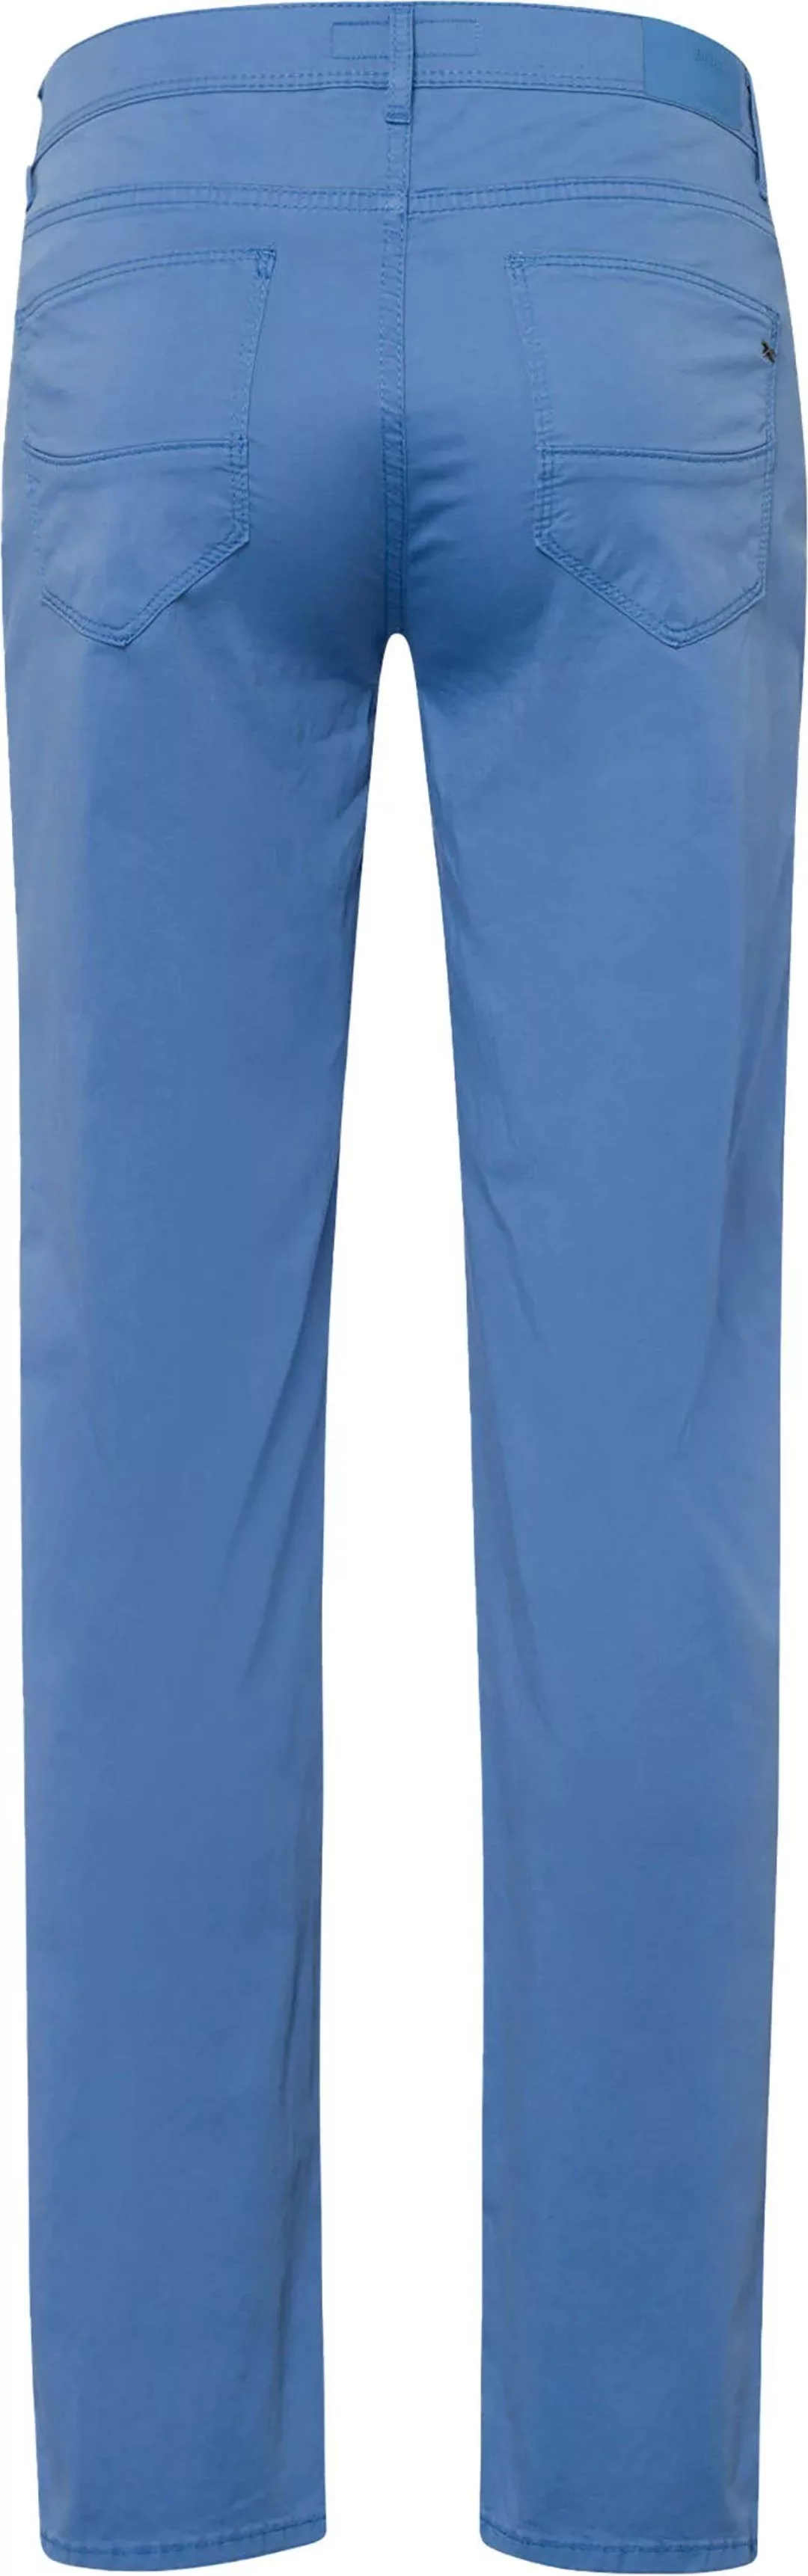 Brax Cadiz Hose Blau - Größe W 33 - L 30 günstig online kaufen